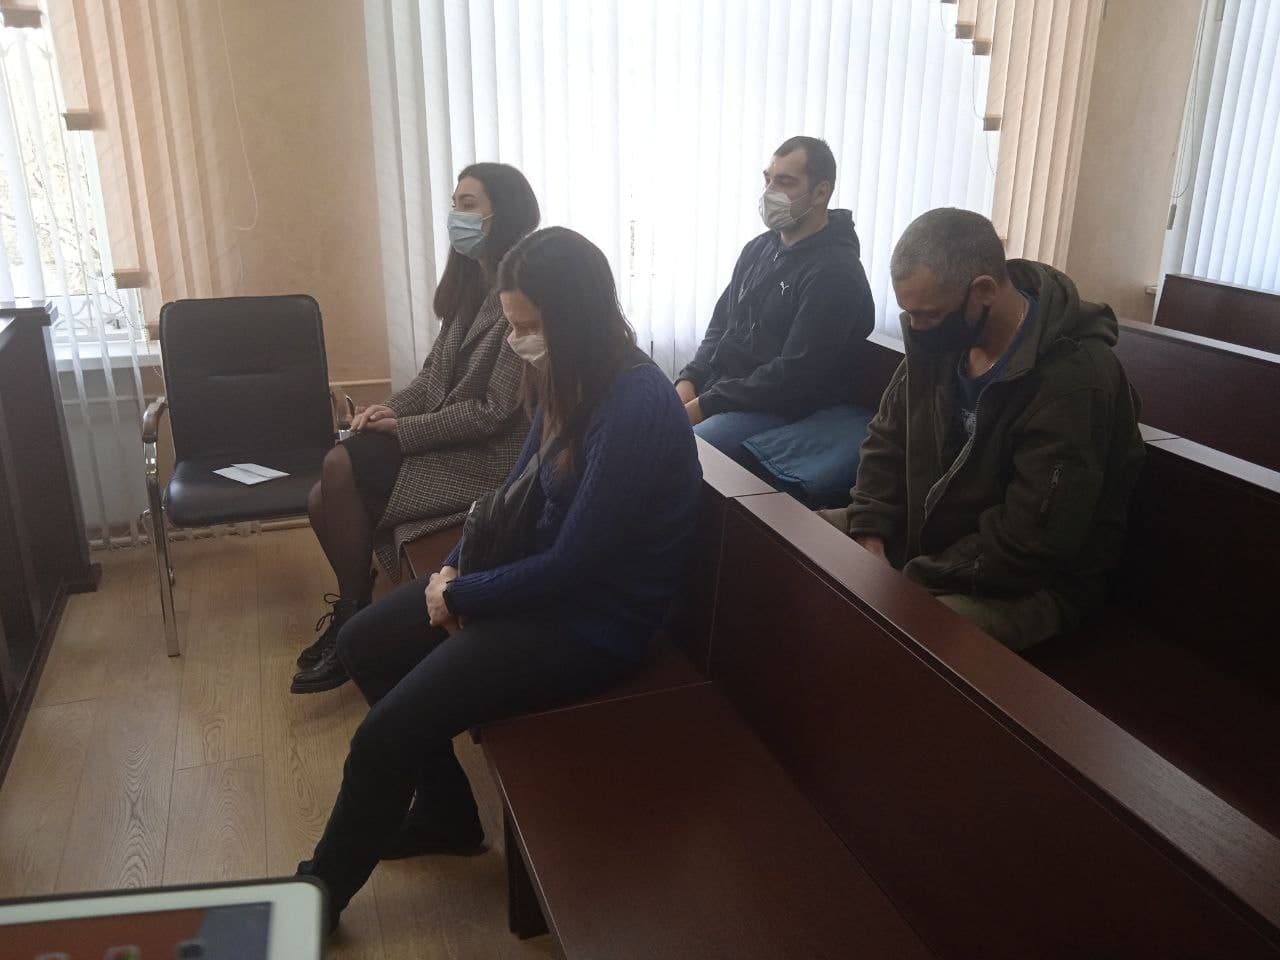 Суд над Сапегой в Гродно будет проходить в закрытом режиме